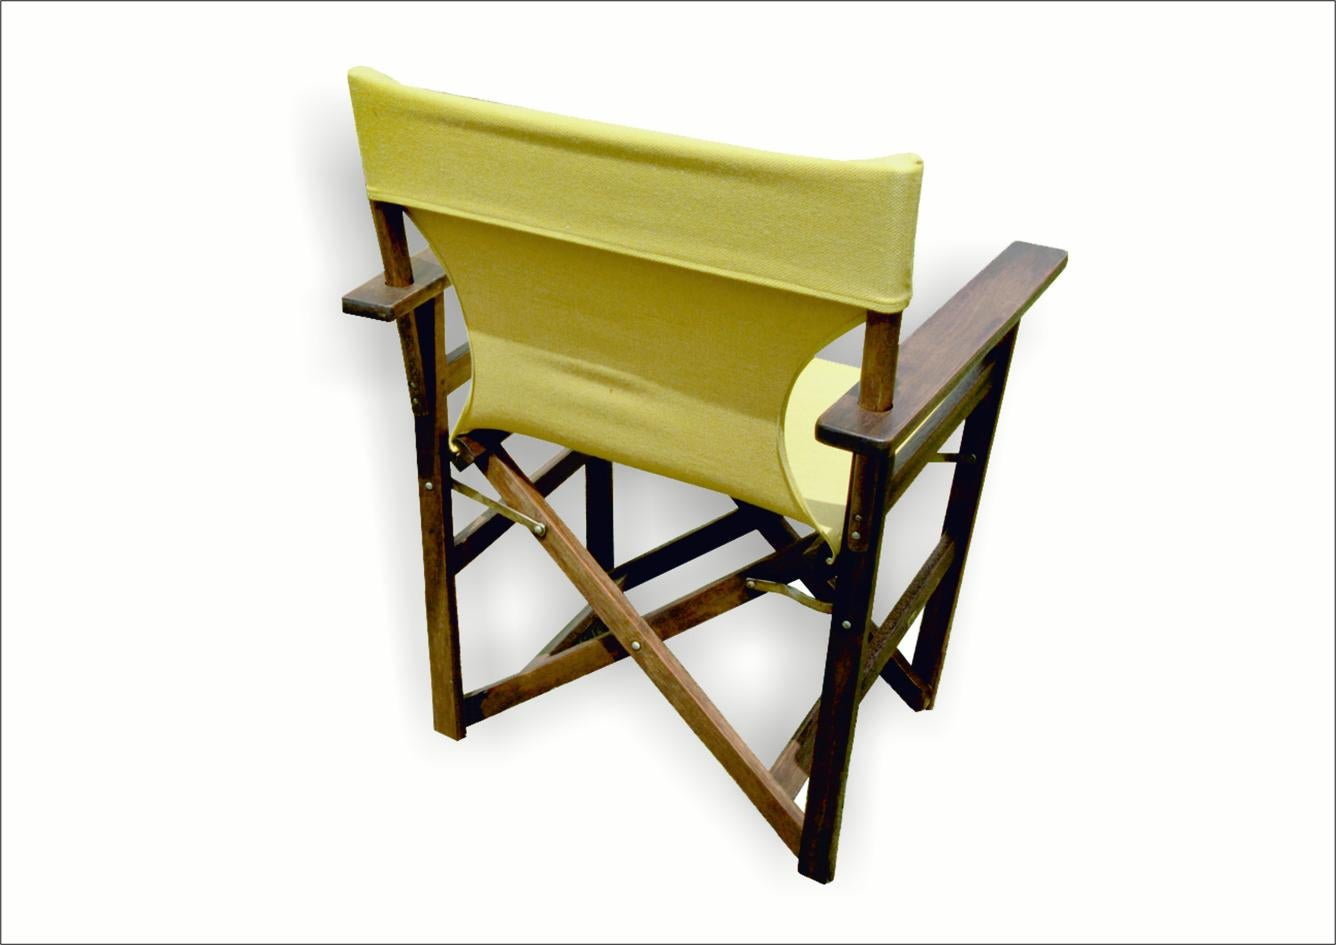 Dieser wunderschöne Vintage-DIRECTOR'S CHAIR stammt aus dem Jahr 1940. 
Er ist aus Holz und Stoff gefertigt und kann mit Hilfe von Metallgelenken gefaltet werden.
In gutem Zustand gekauft, wurde er restauriert; die neue Sitzfläche und Rückenlehne